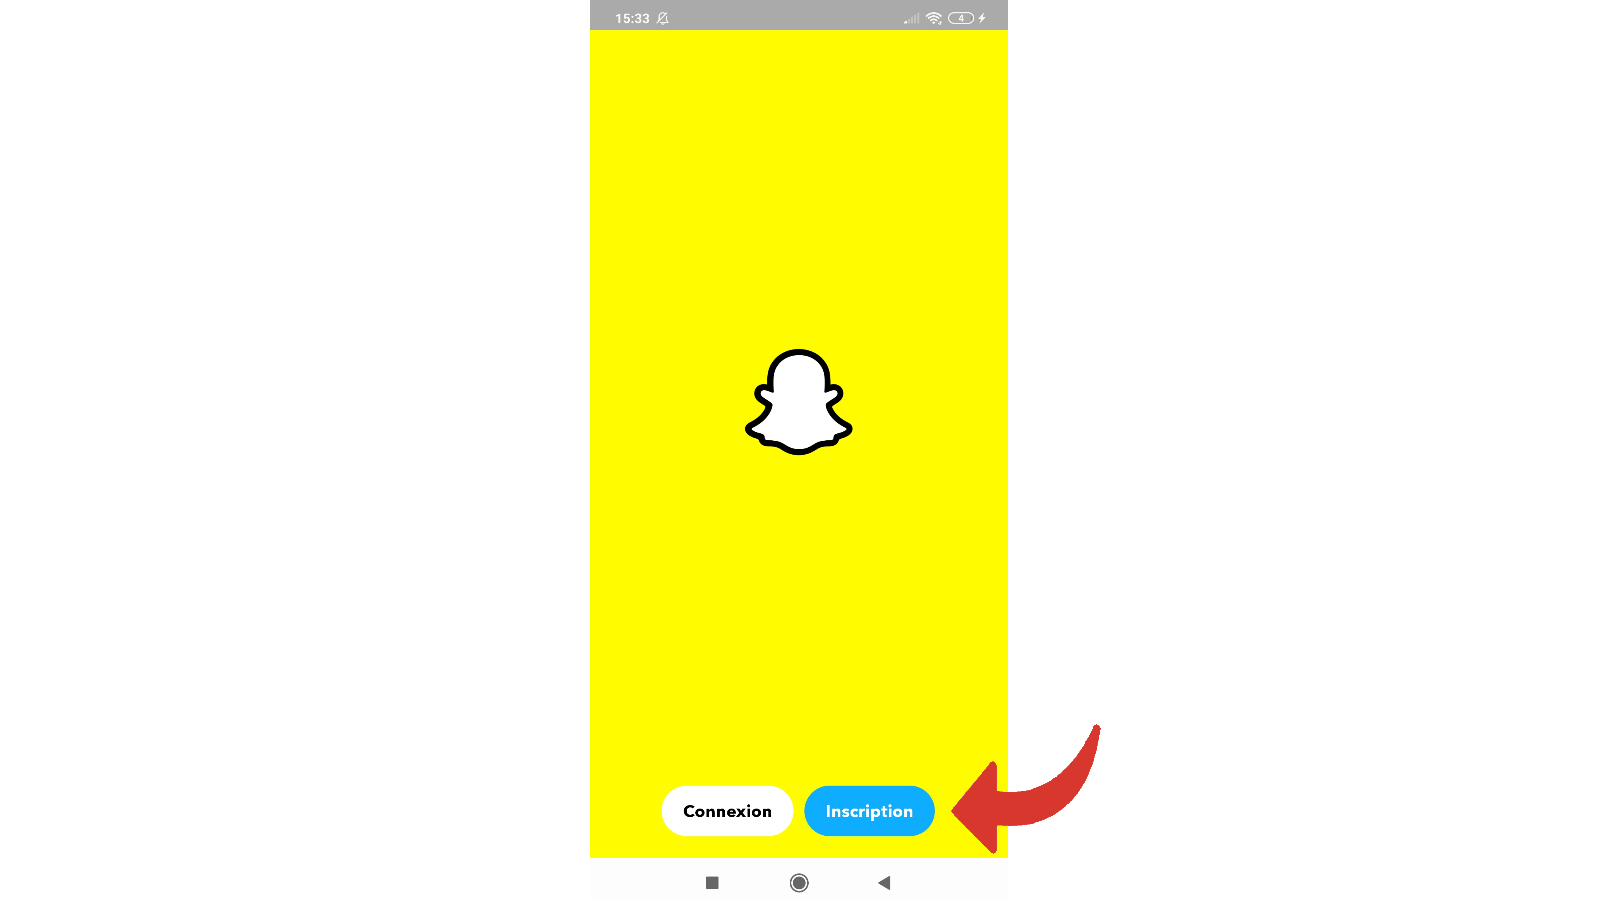 Cliquez sur Inscription pour créer un deuxième compte snapchat 